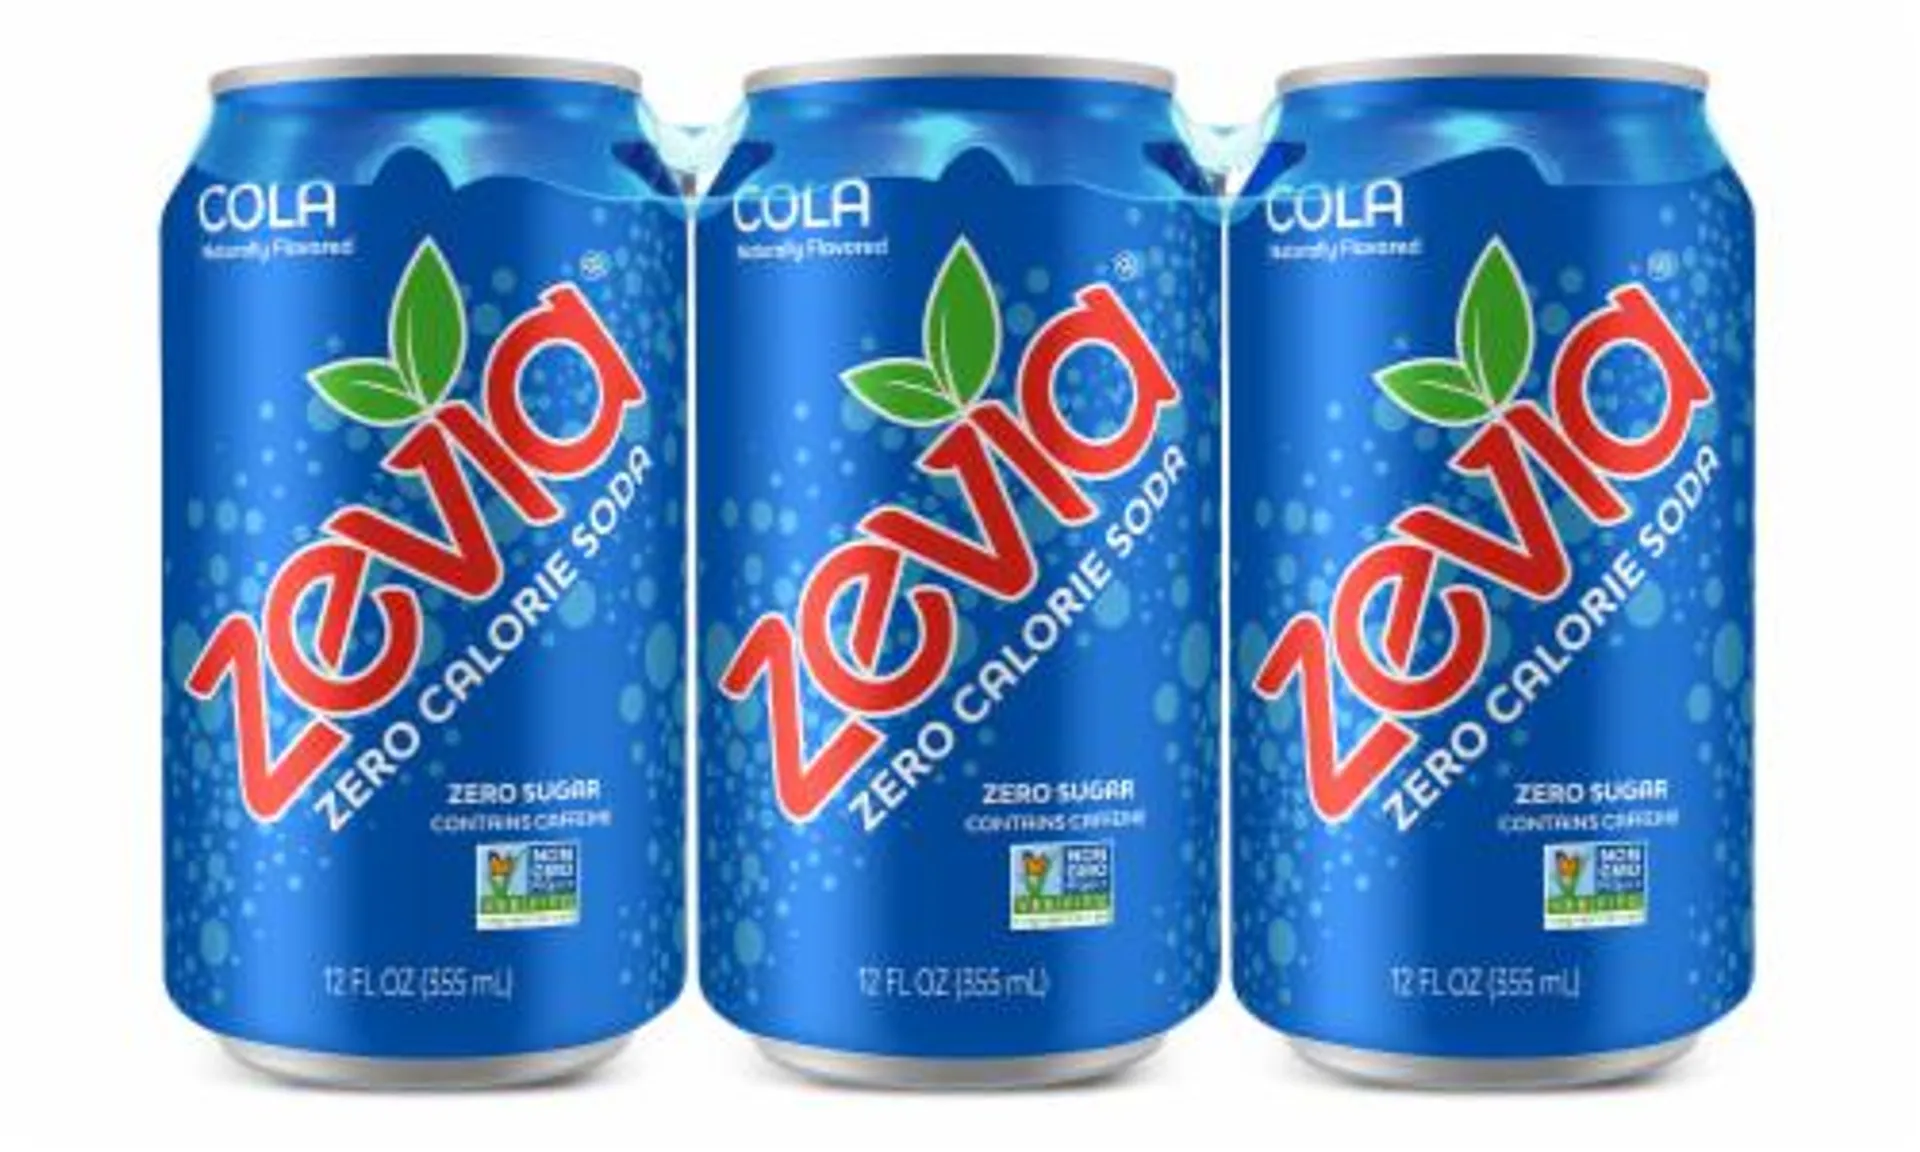 Zevia® Cola Zero Calorie Soda Cans